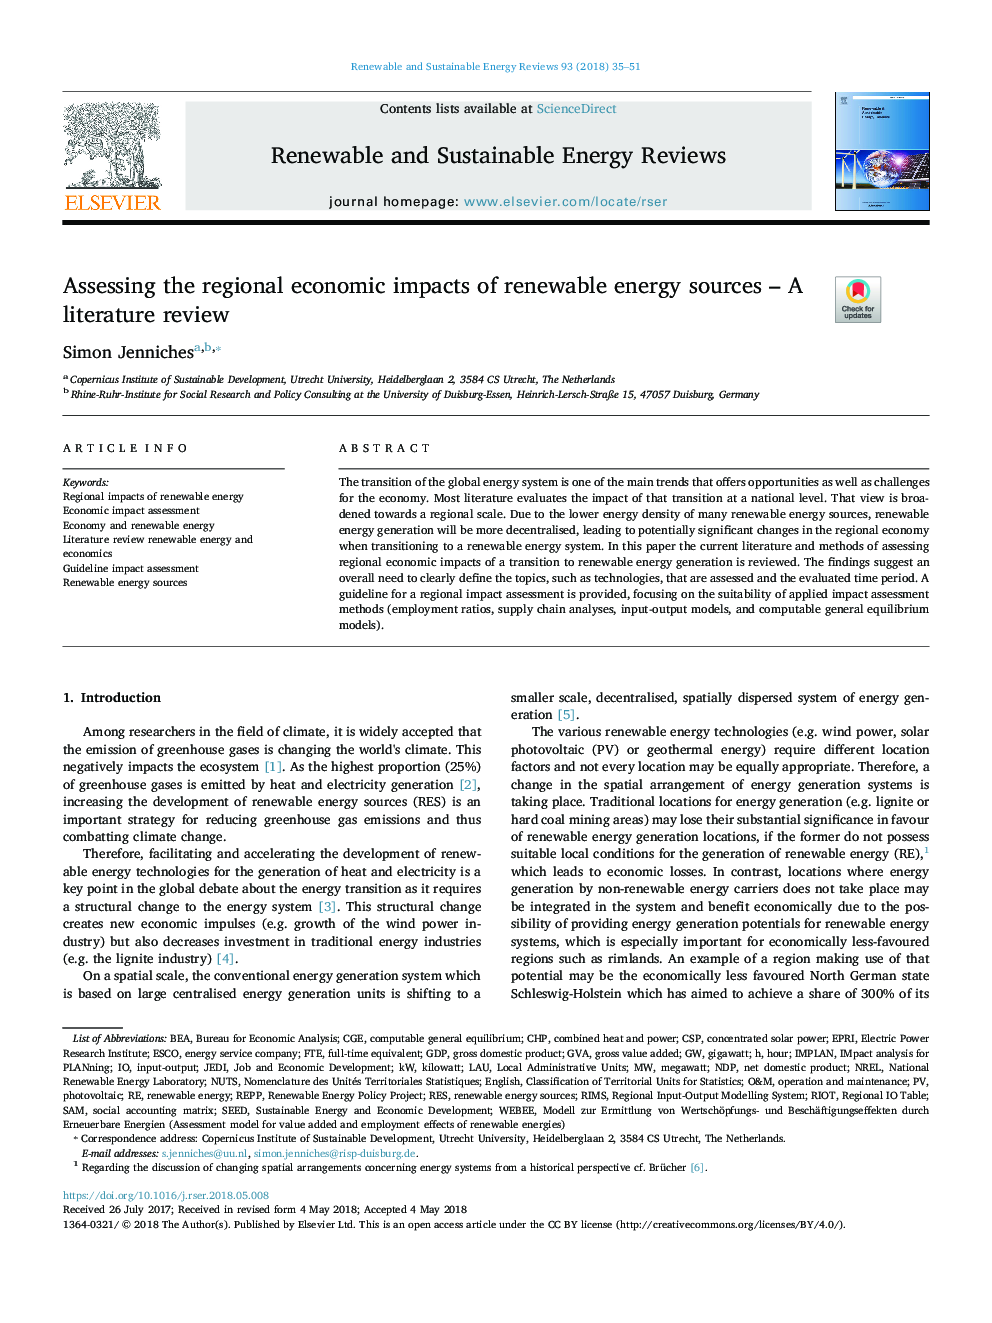 ارزیابی تأثیرات اقتصادی منطقه ای منابع انرژی تجدیدپذیر - بررسی ادبیات 